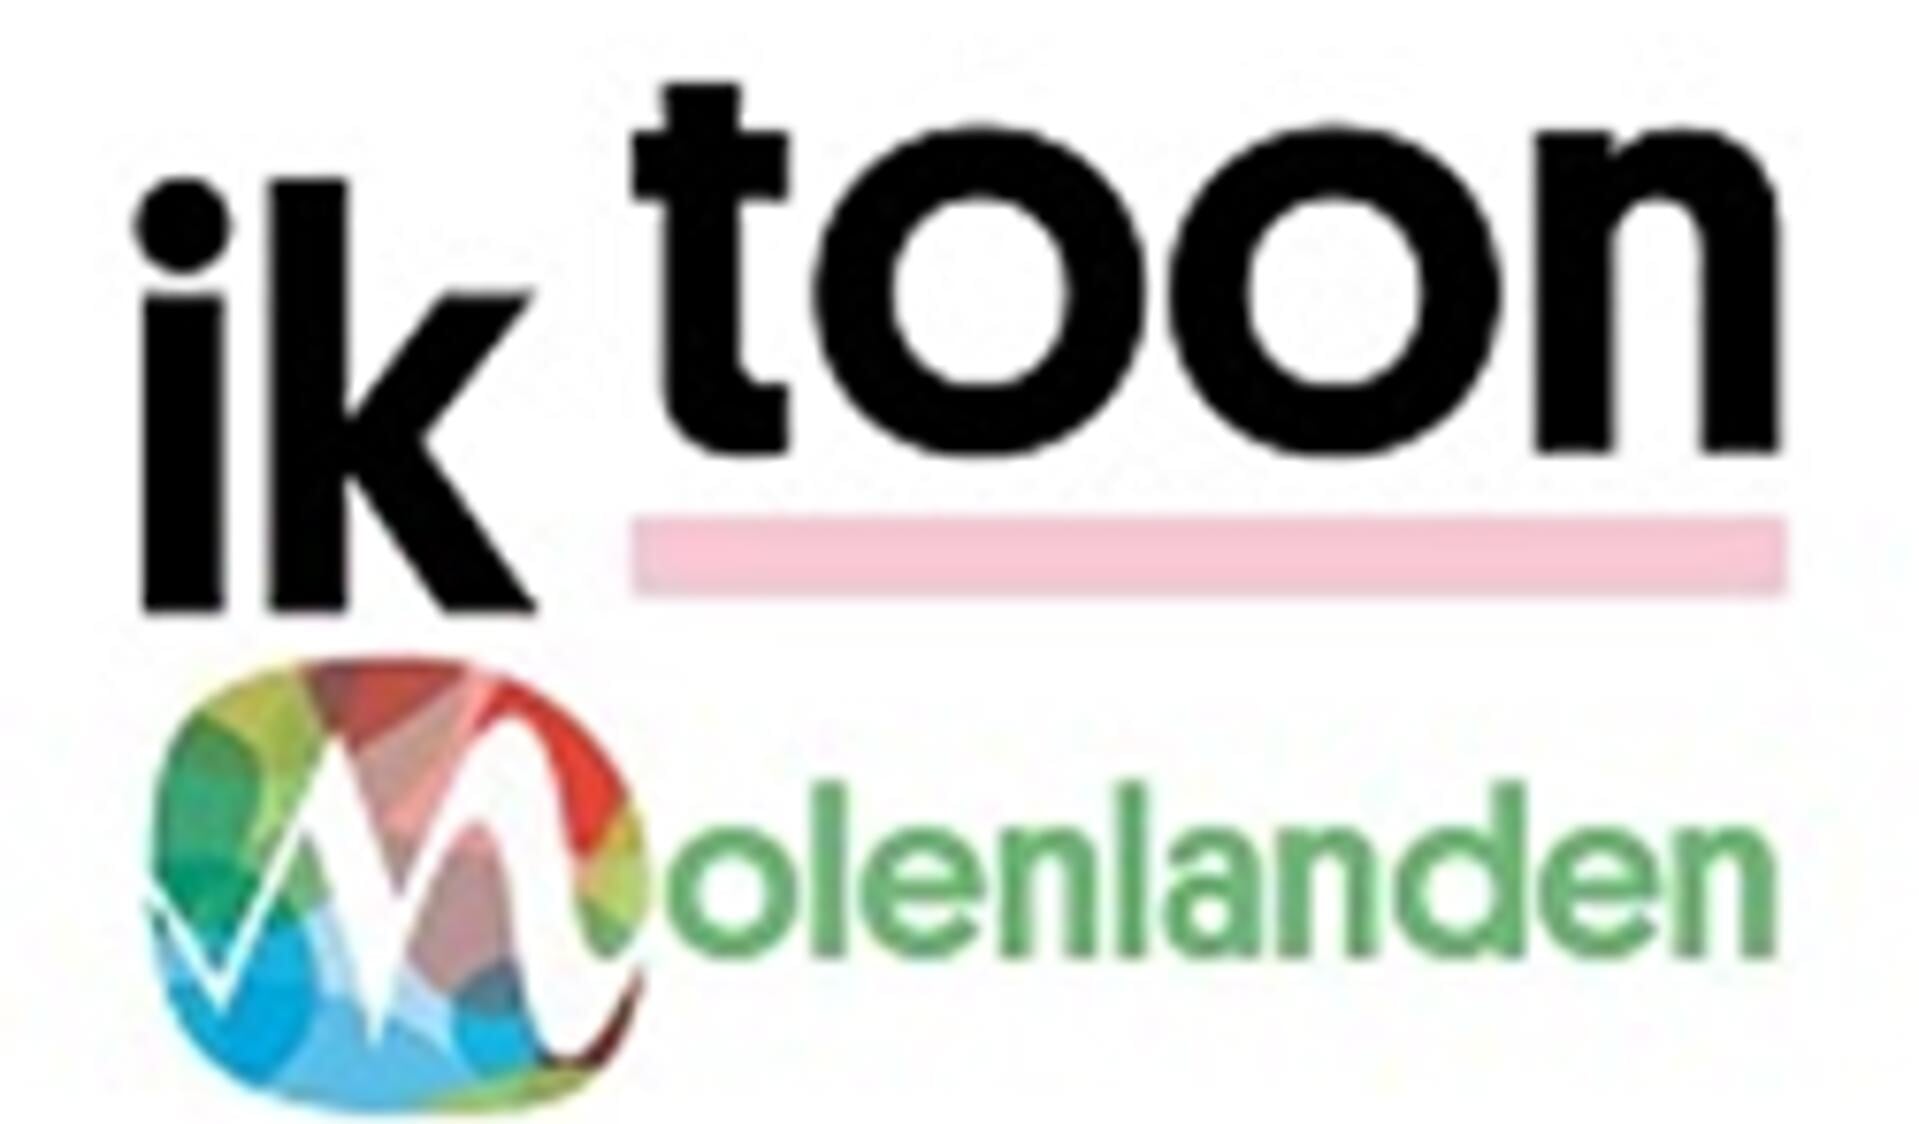 • Het logo van IkToon Molenlanden.